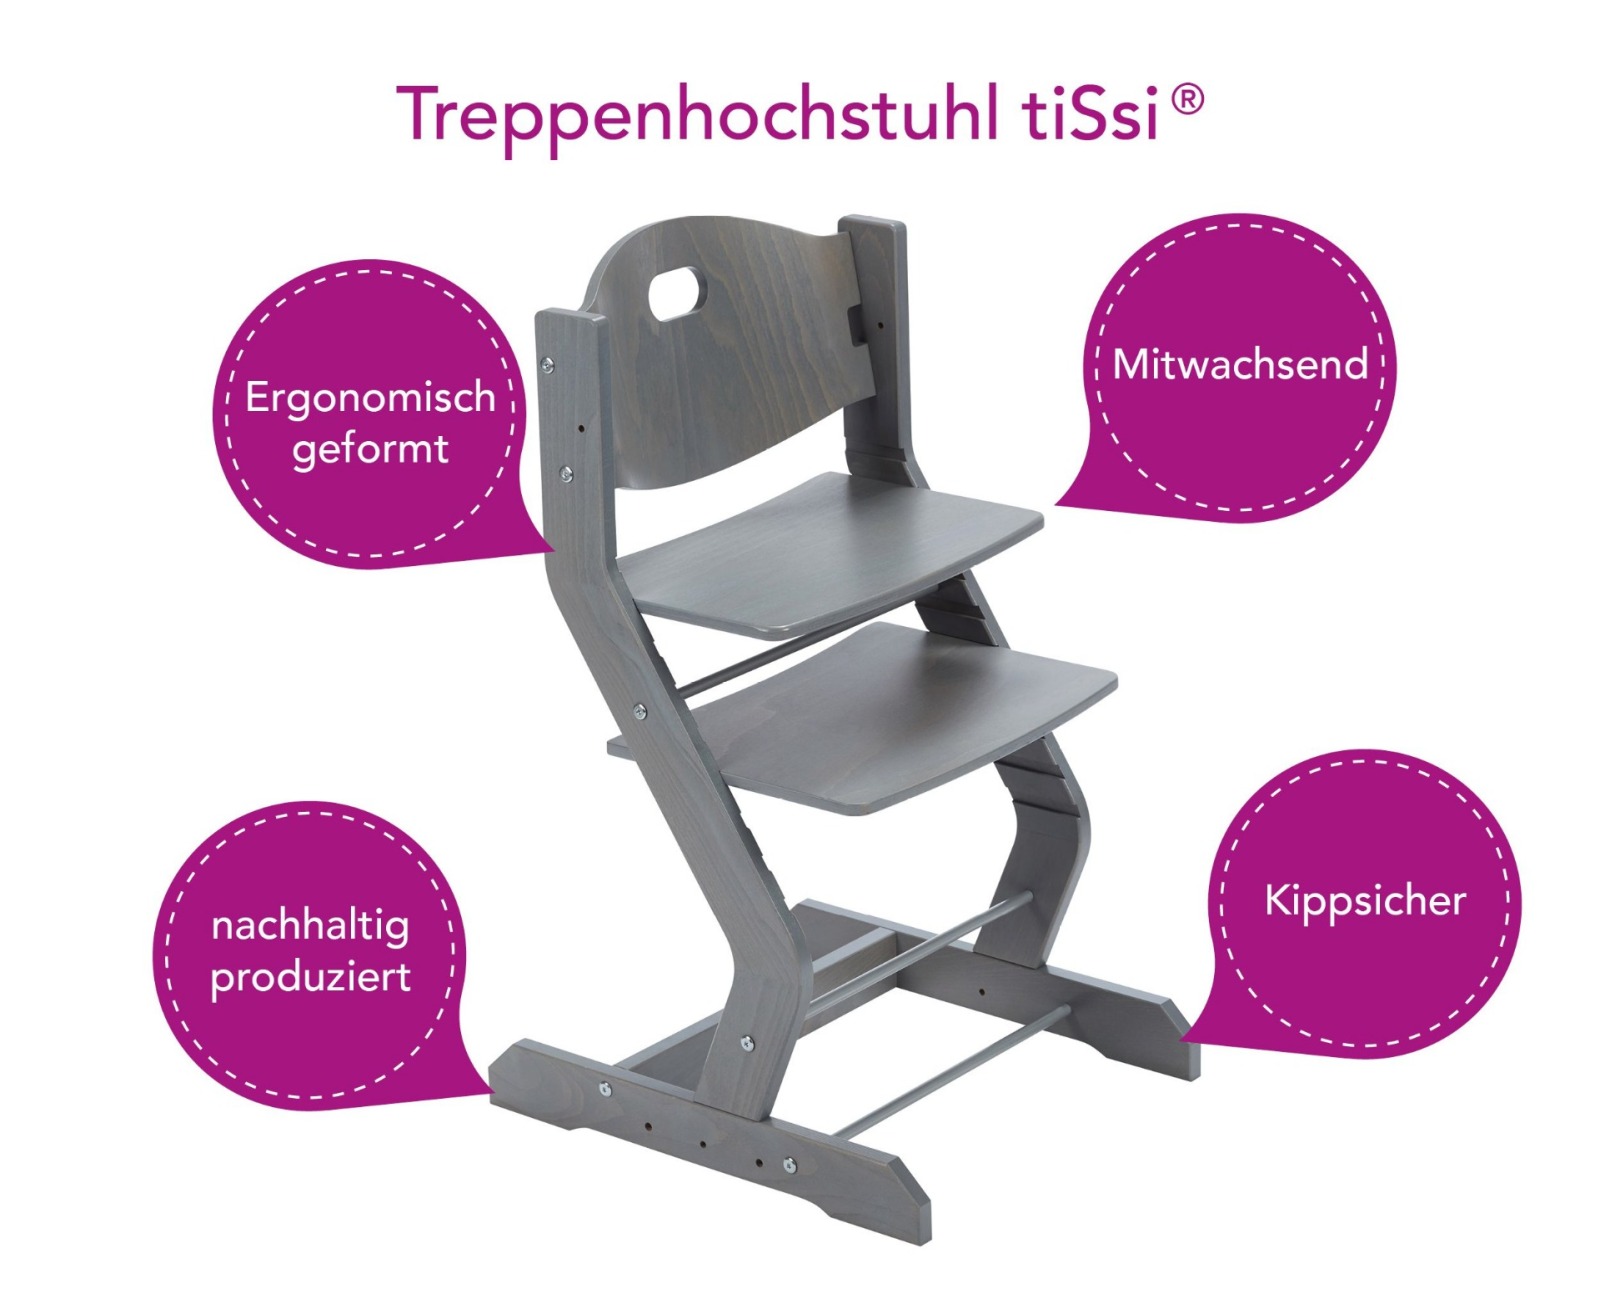 tiSsi Treppenhochstuhl Grau ohne Bügel und Sitzkissen